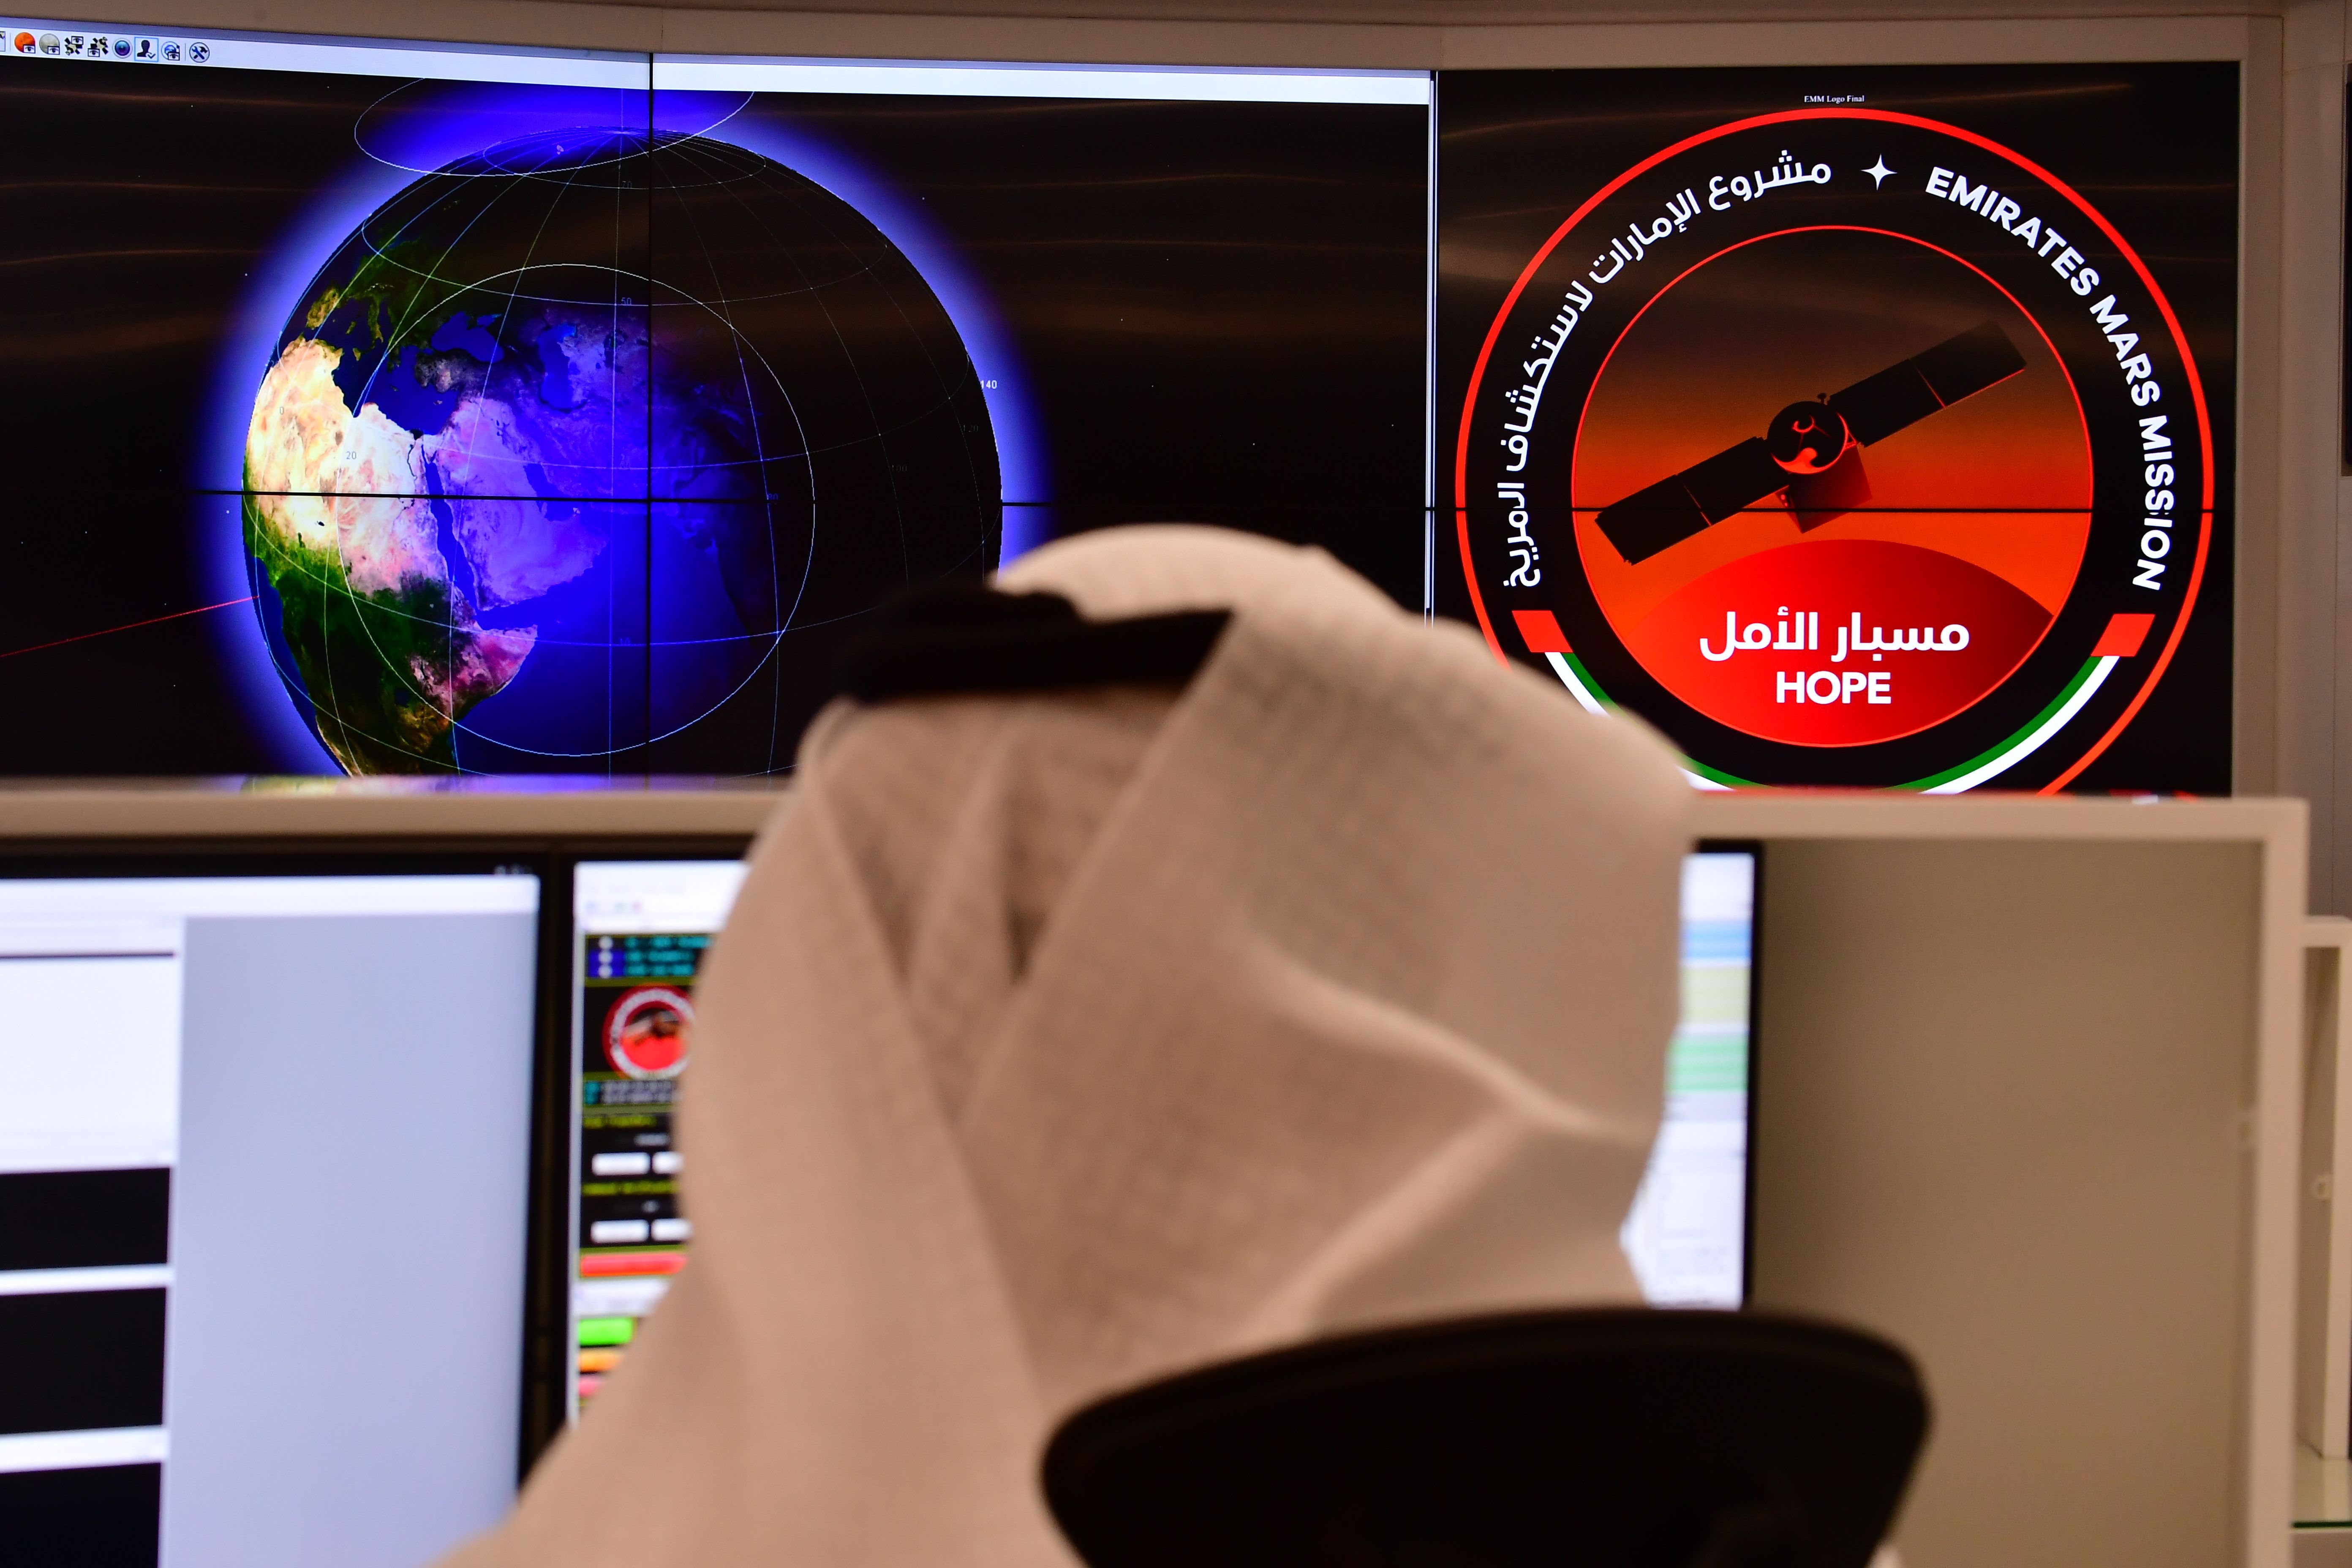 [TRENDING] UAE set for historic Mars mission as it preps Hope orbiter ...